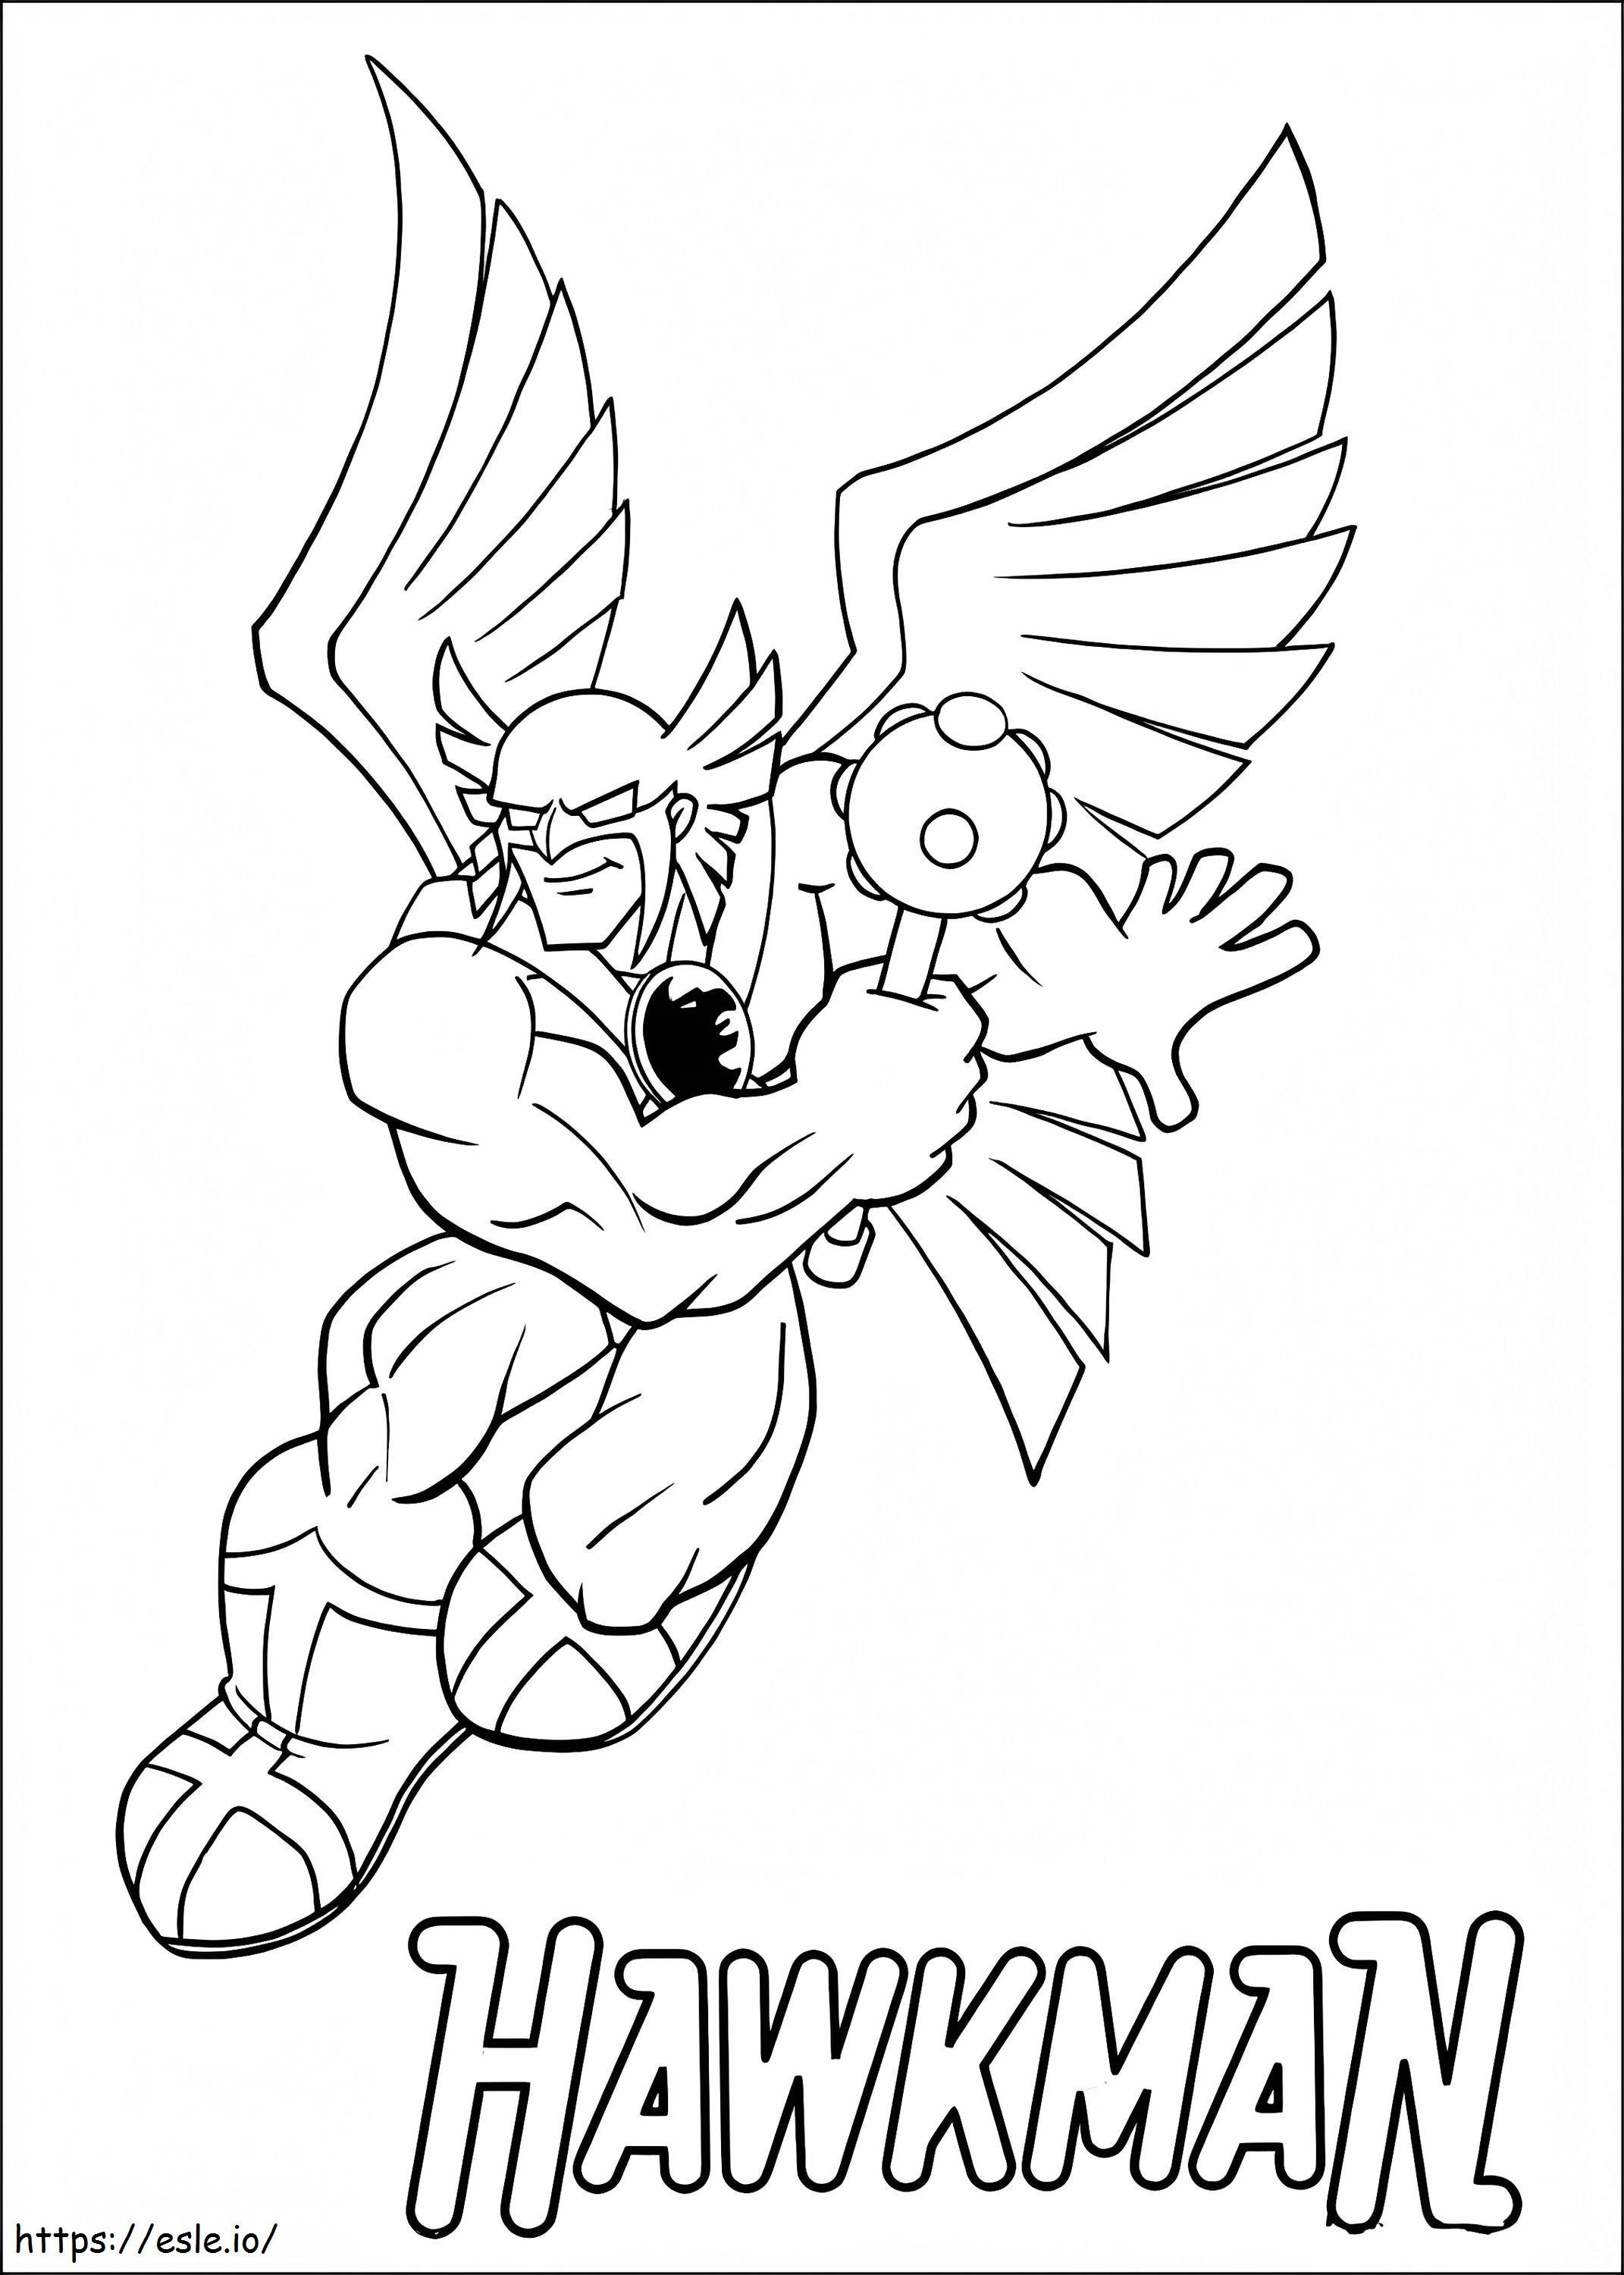 Hawkman van Super Friends kleurplaat kleurplaat